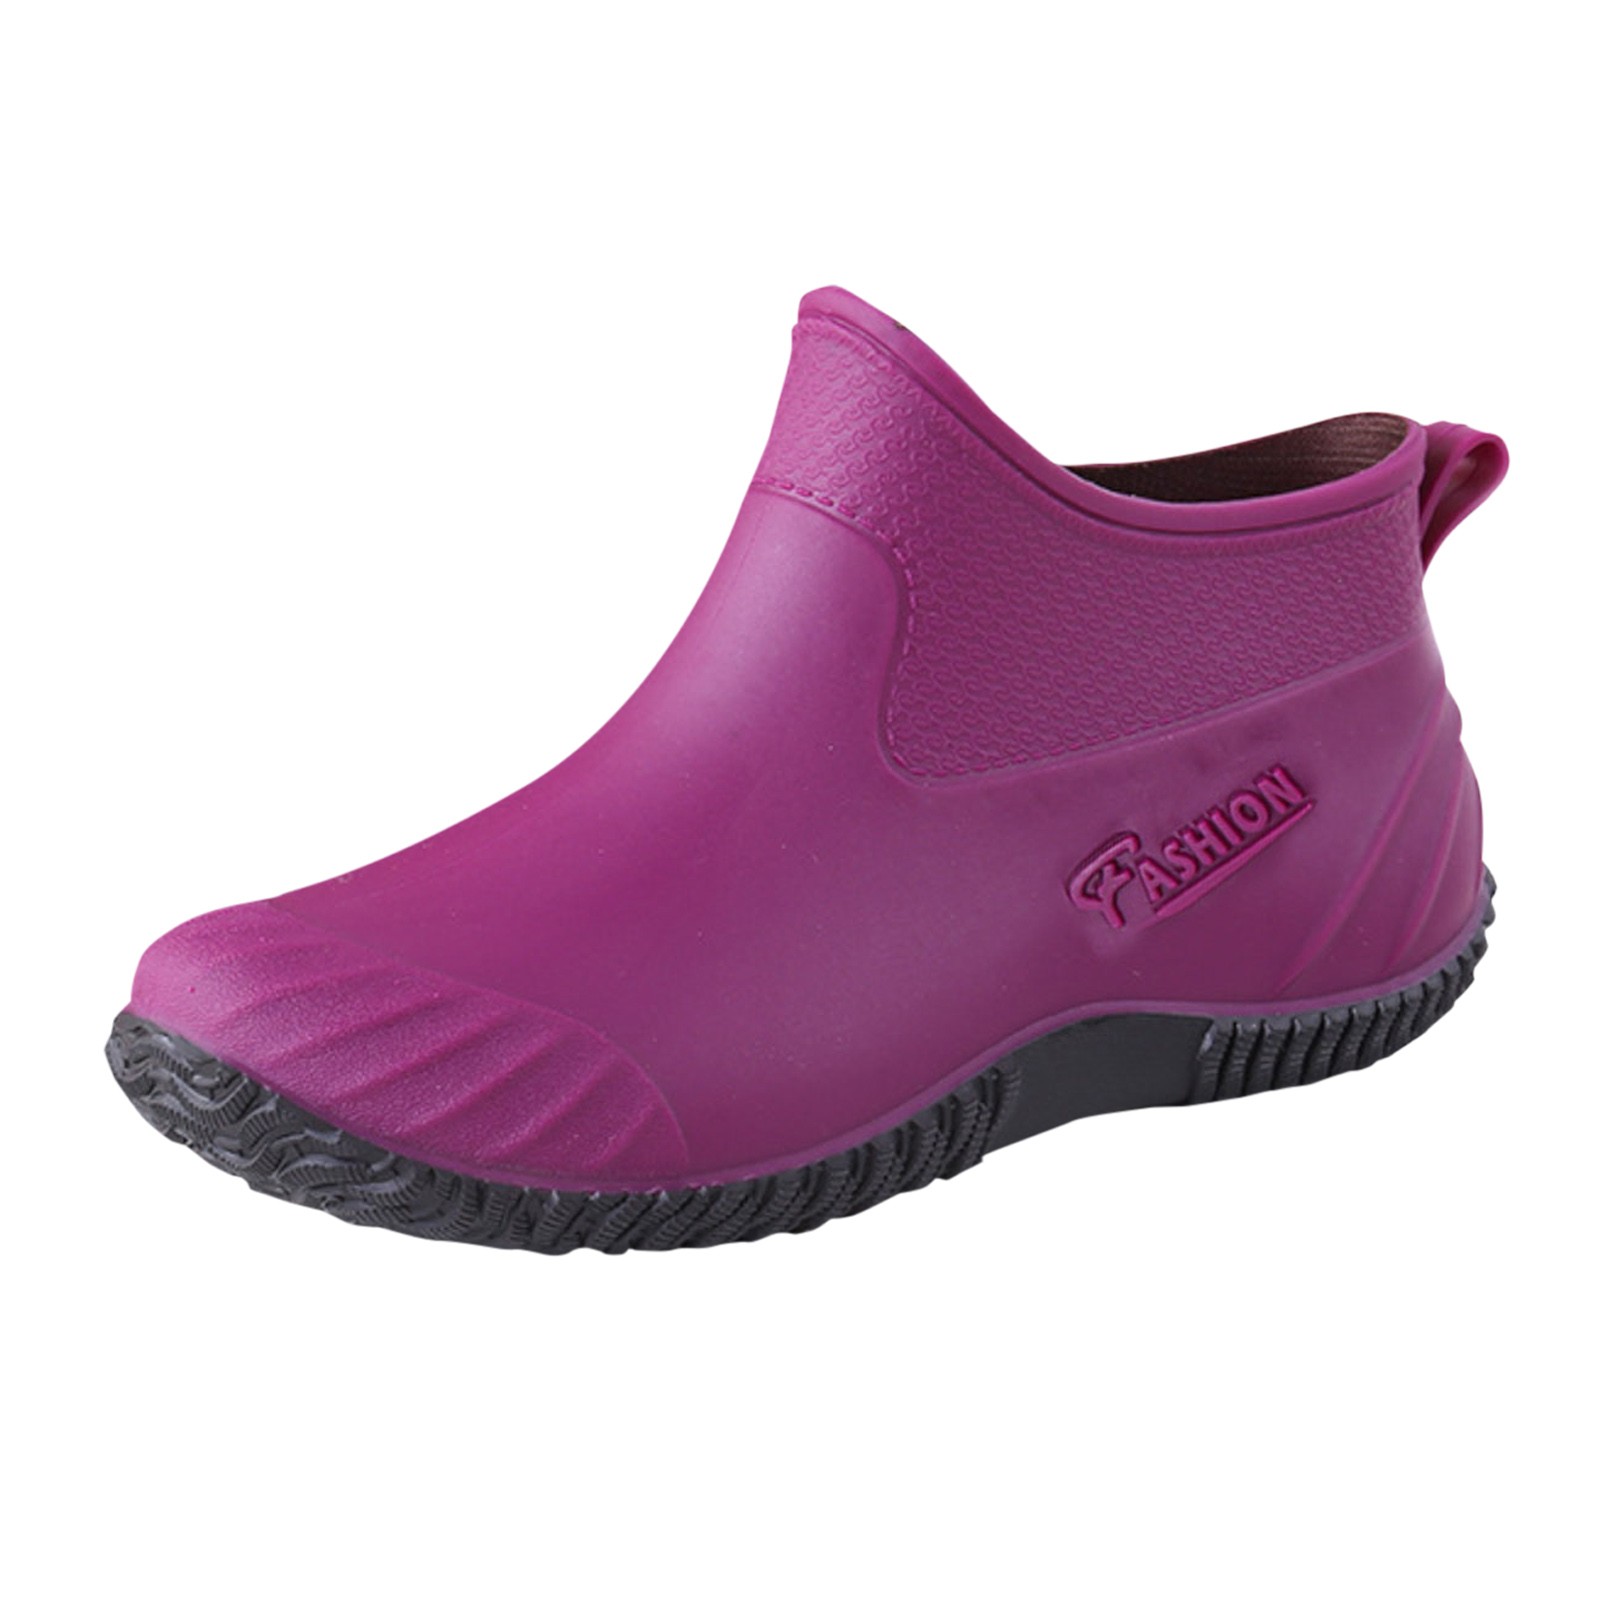 Rubber Boots Men Fashion Woman Rain Shoes Outdoor Waterproof Women's ...